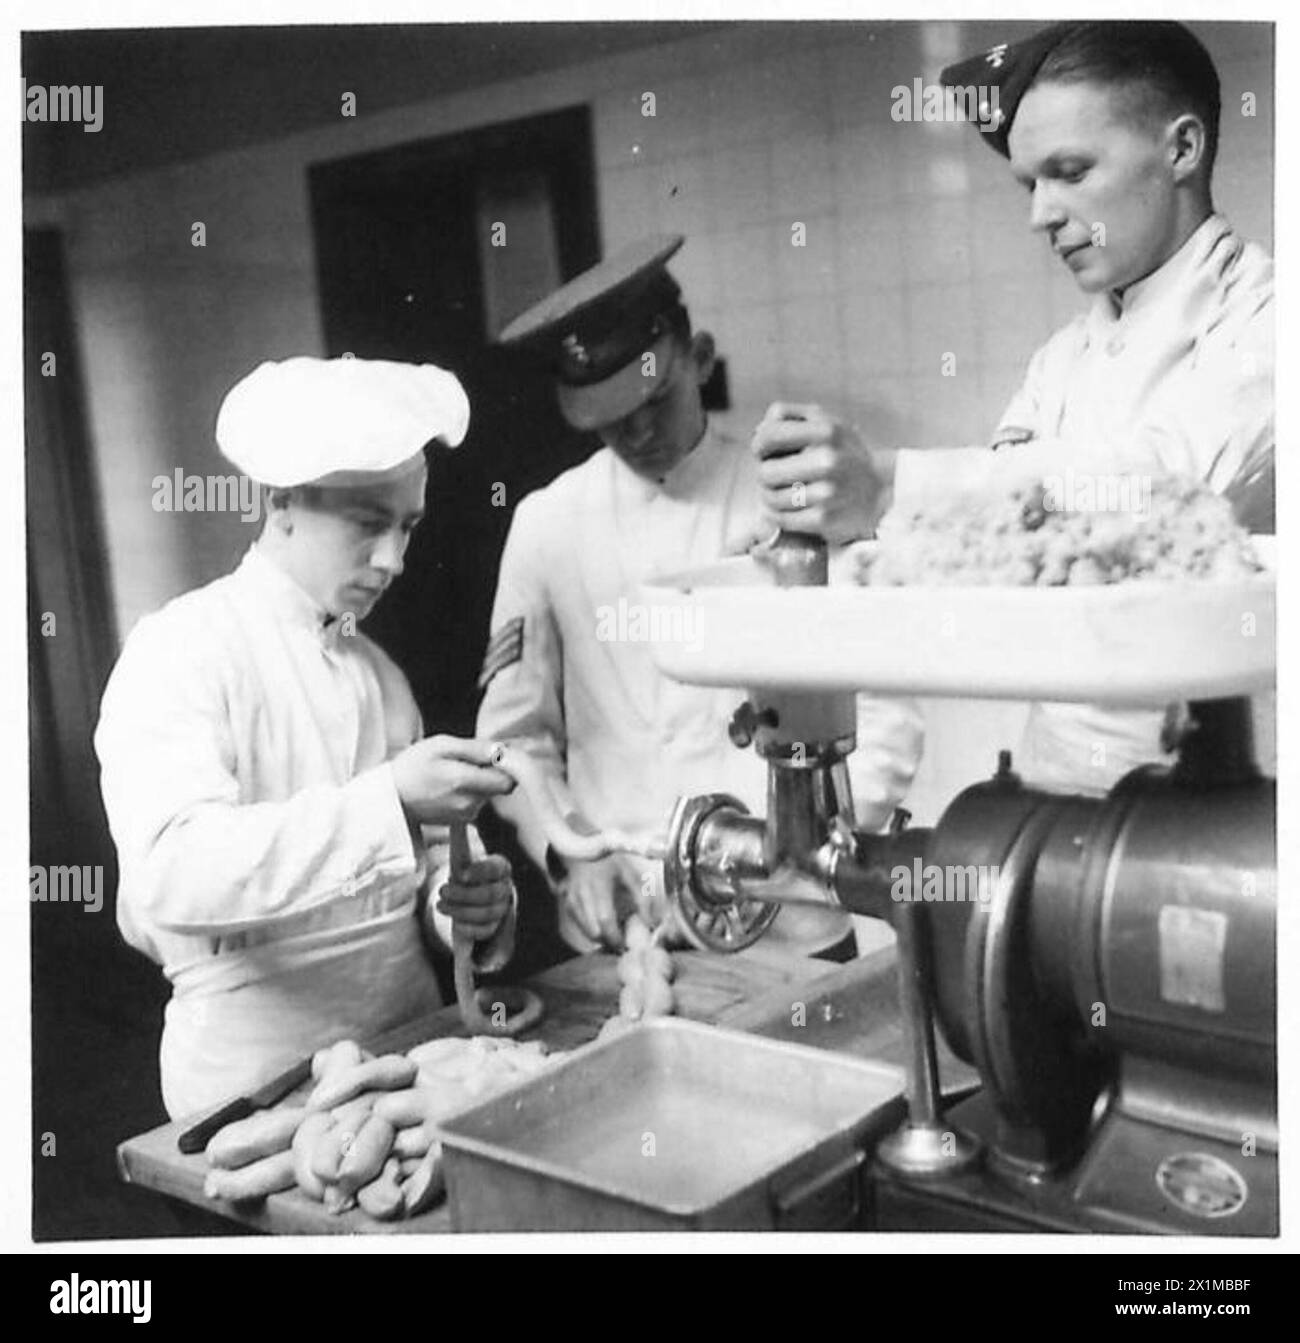 ÉVITER LE GASPILLAGE - les cuisiniers de l'armée font des saucisses à partir de viande et de pain laissés par les repas précédents, armée britannique Banque D'Images